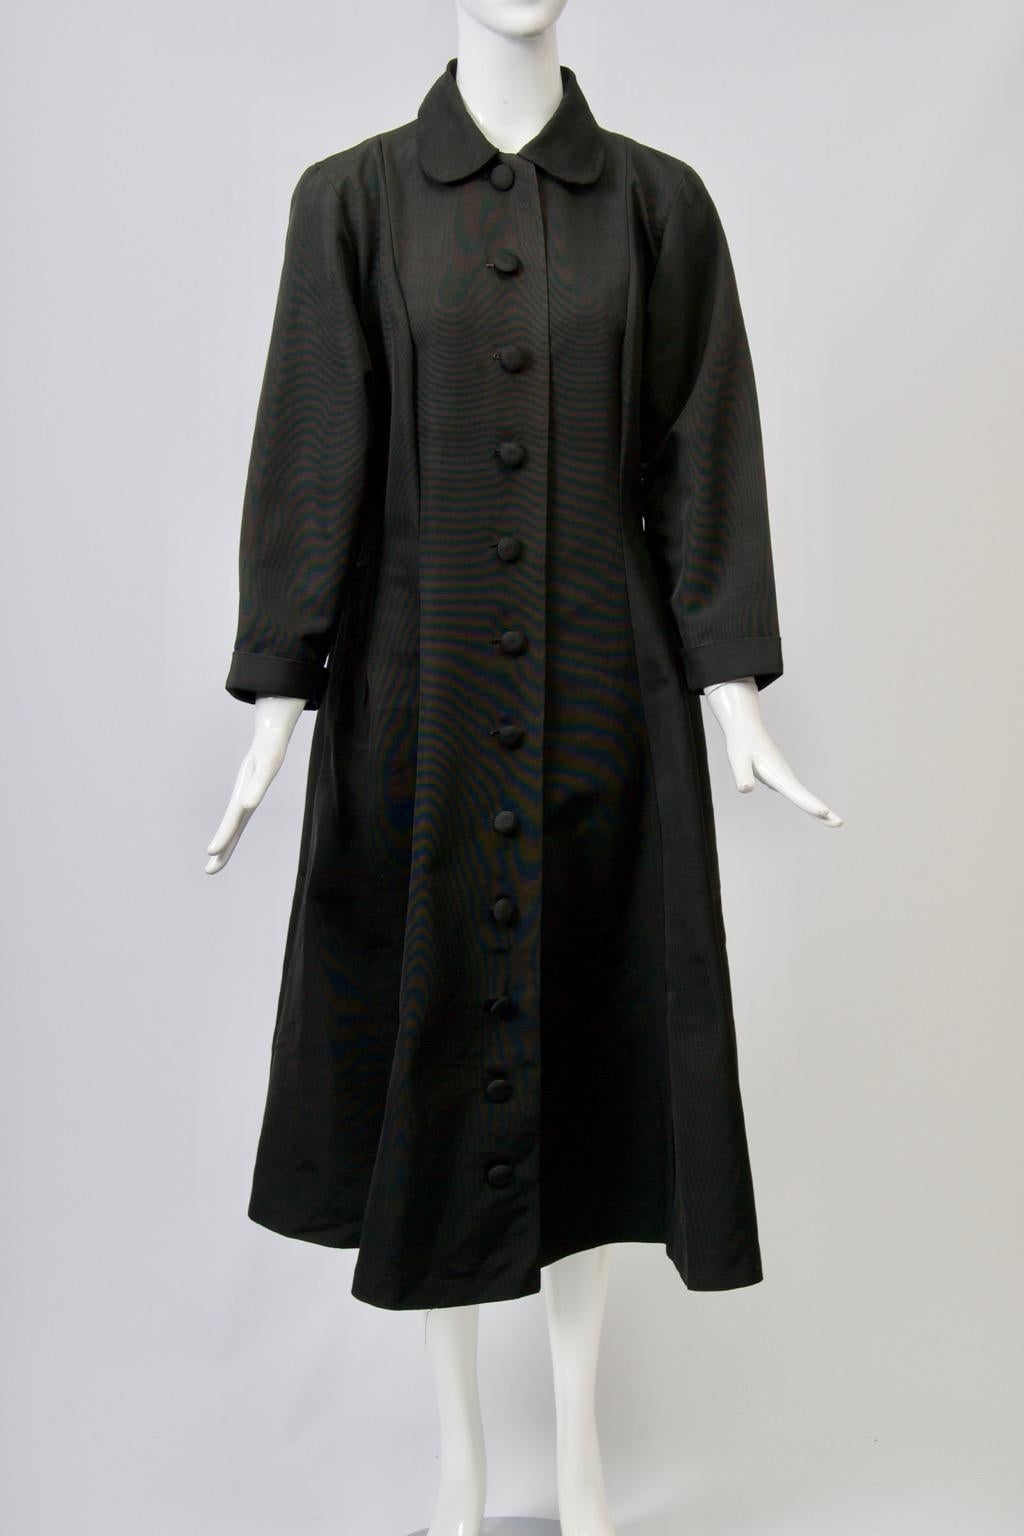 Schwarzer Vintage-Mantel aus Faille im Prinzessinnen-Stil mit Petermännchen-Kragen und selbstklebenden Knöpfen vom Hals bis zum Saum. Eingesetzte Ärmel mit tiefen Armlöchern. Vertikale Nähte formen die taillierte Taille und den ausgestellten Rock.